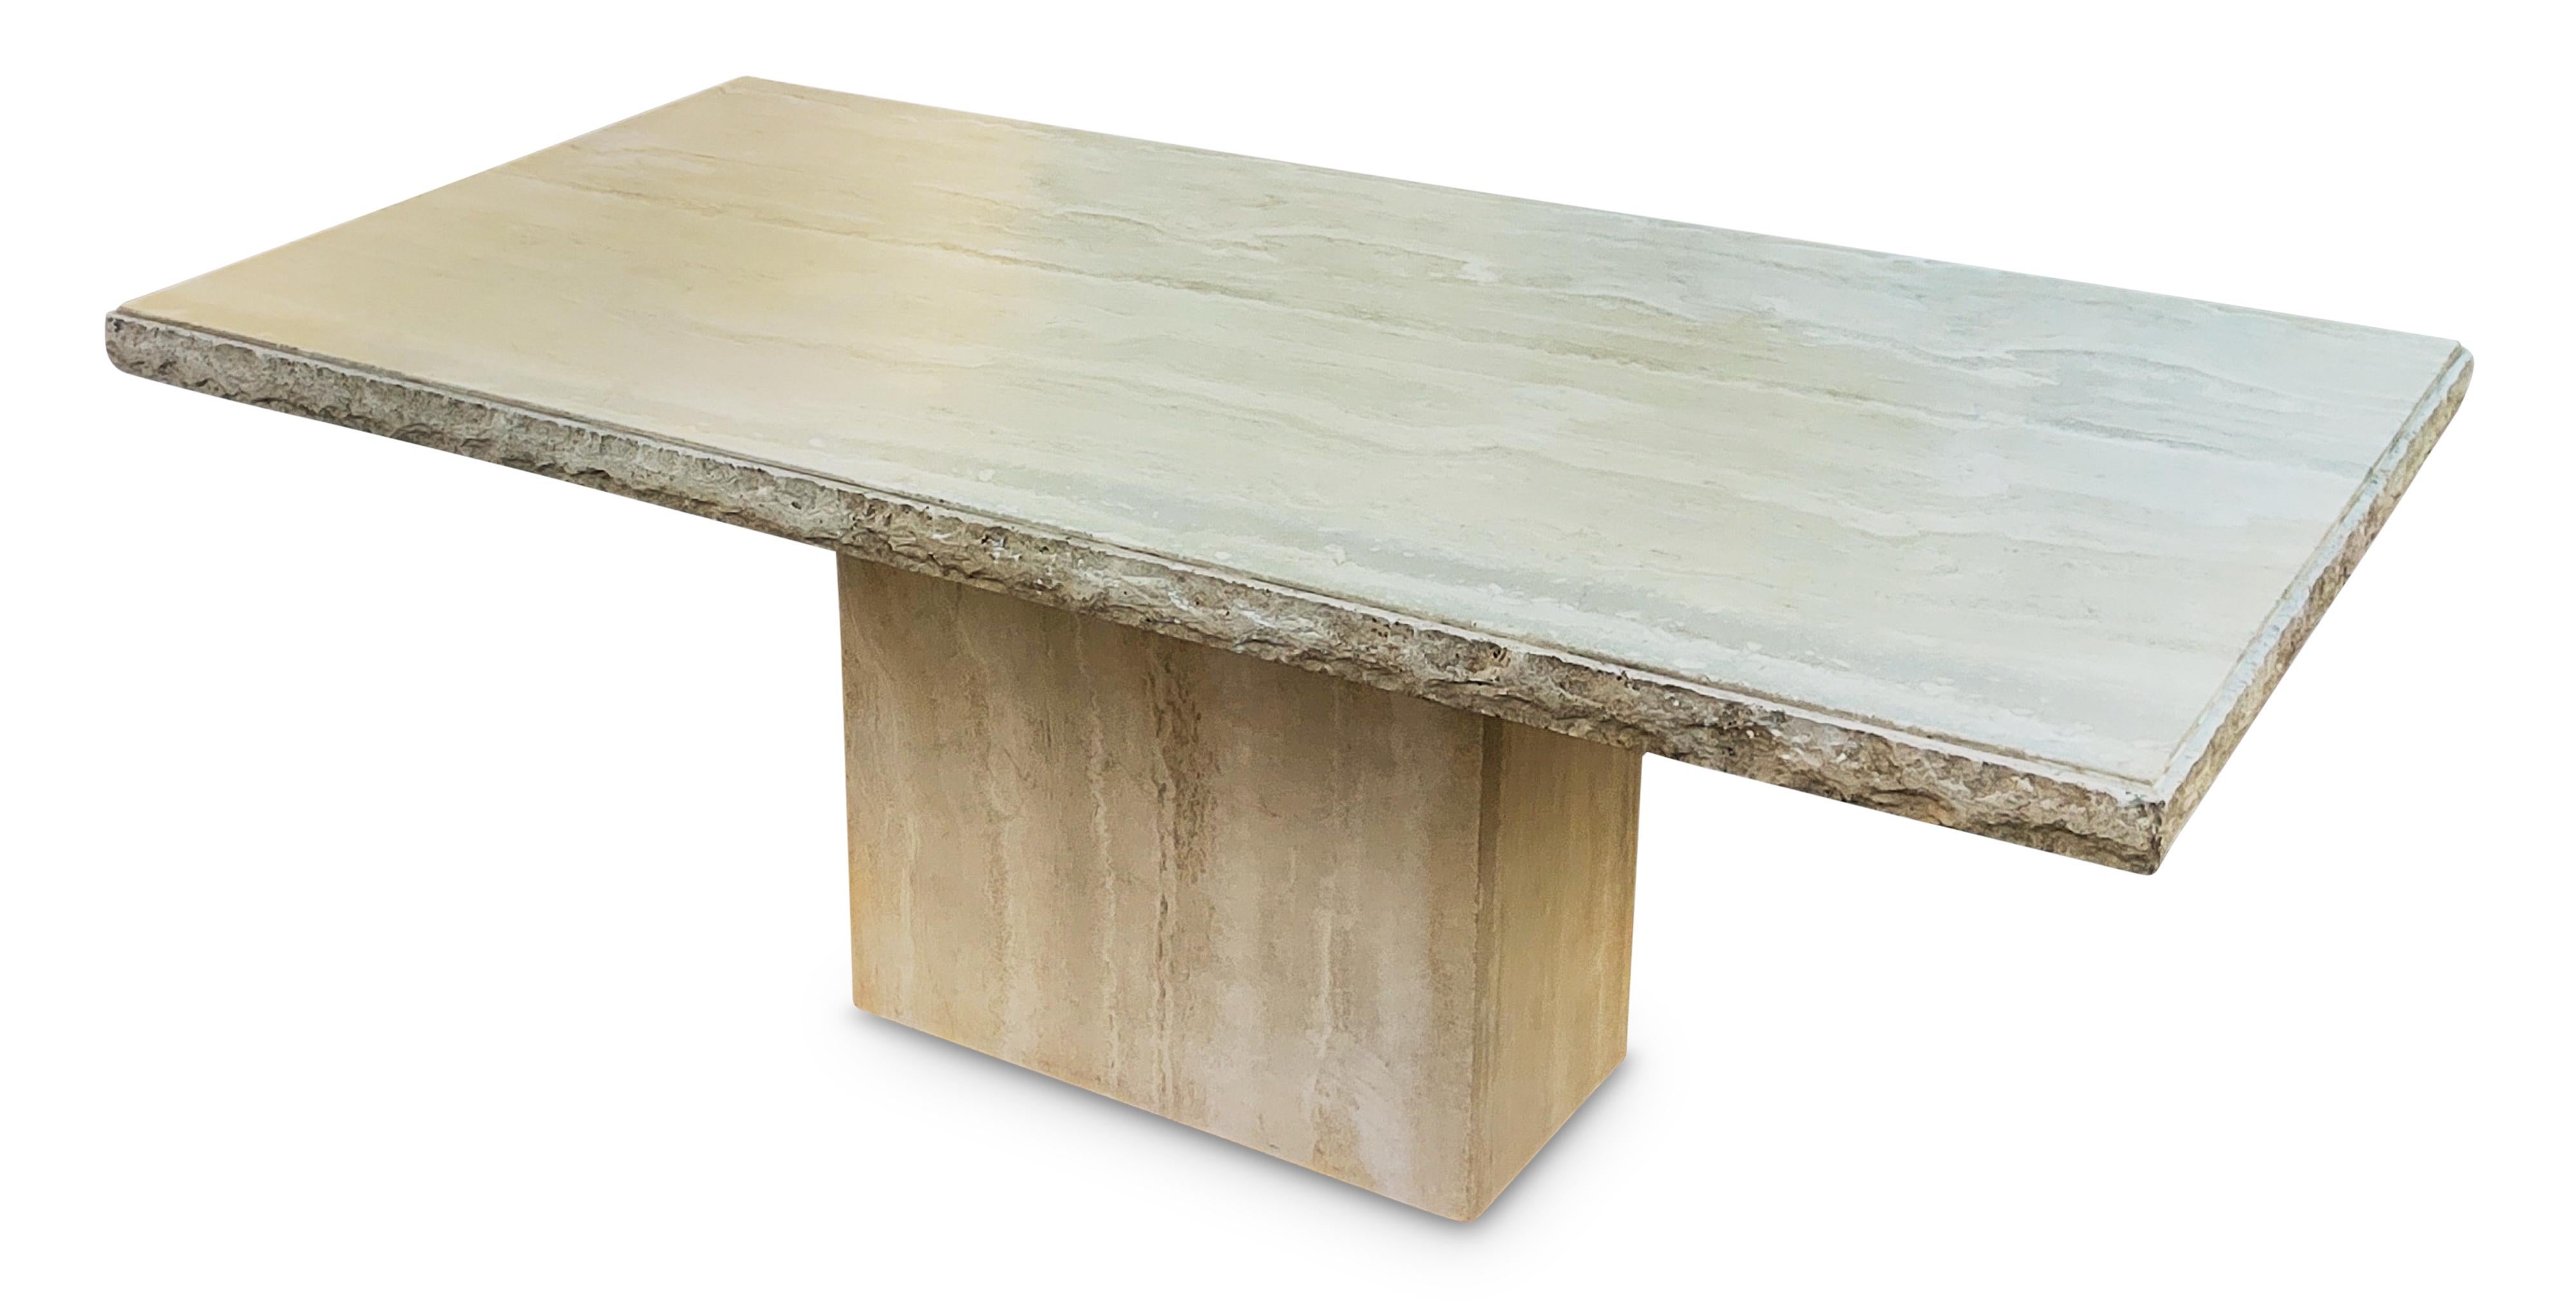 Fabriquée en Italie dans les années 1970, une grande table de salle à manger ou un bureau entièrement en marbre travertin. Le plateau est constitué d'une grande dalle de travertin poli, dont le grain naturel est chaud et agréable. La douceur du